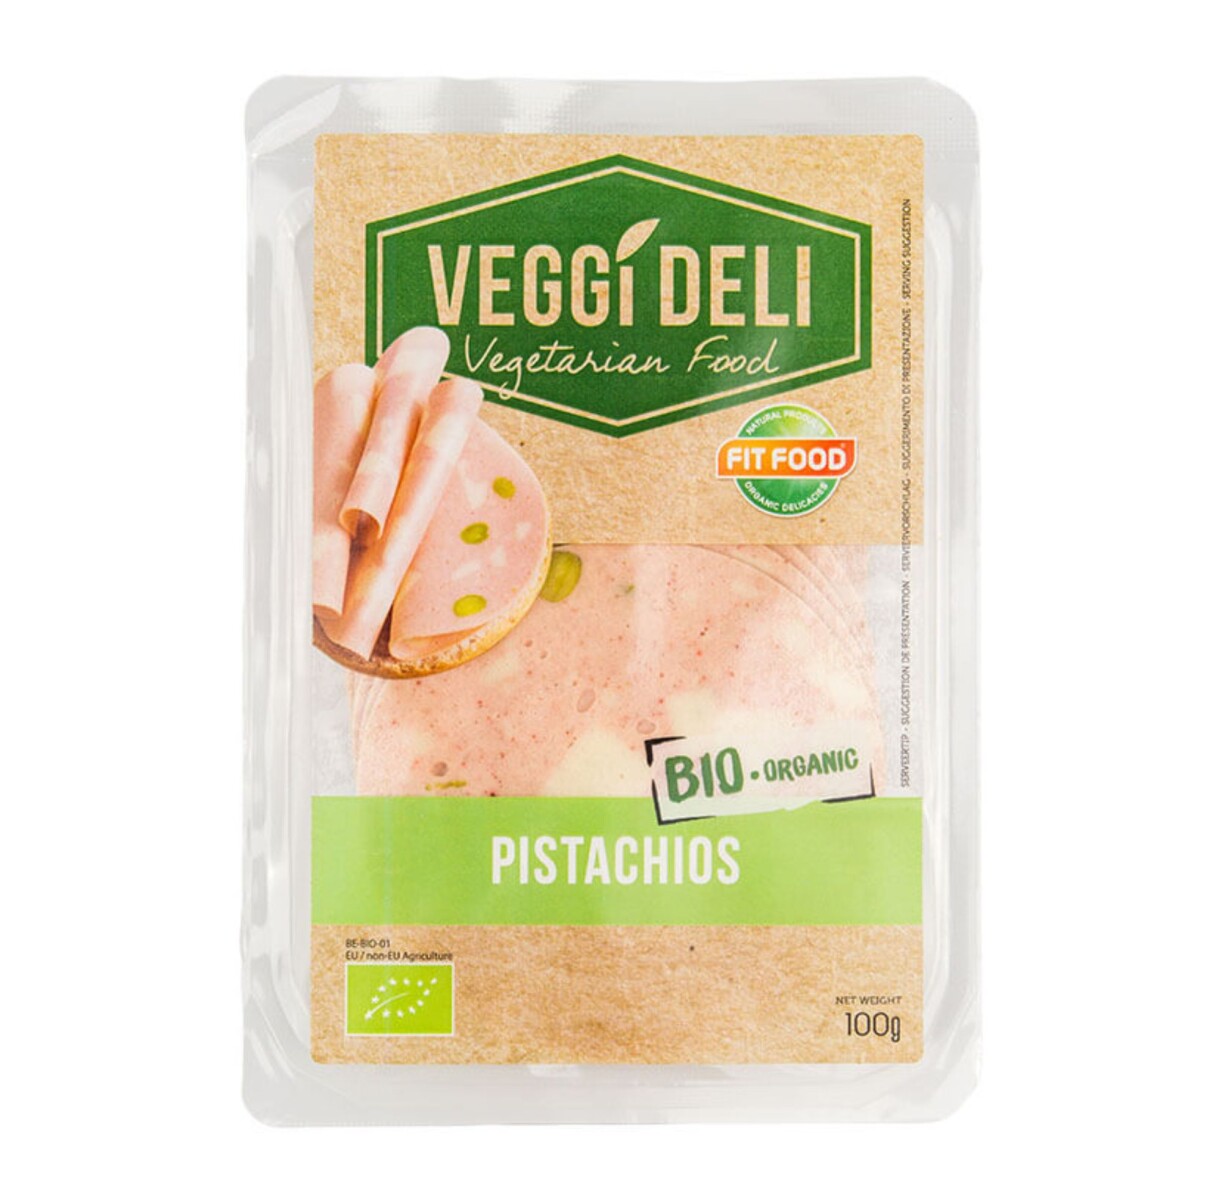 Vegan Deli Pistachios 100g 